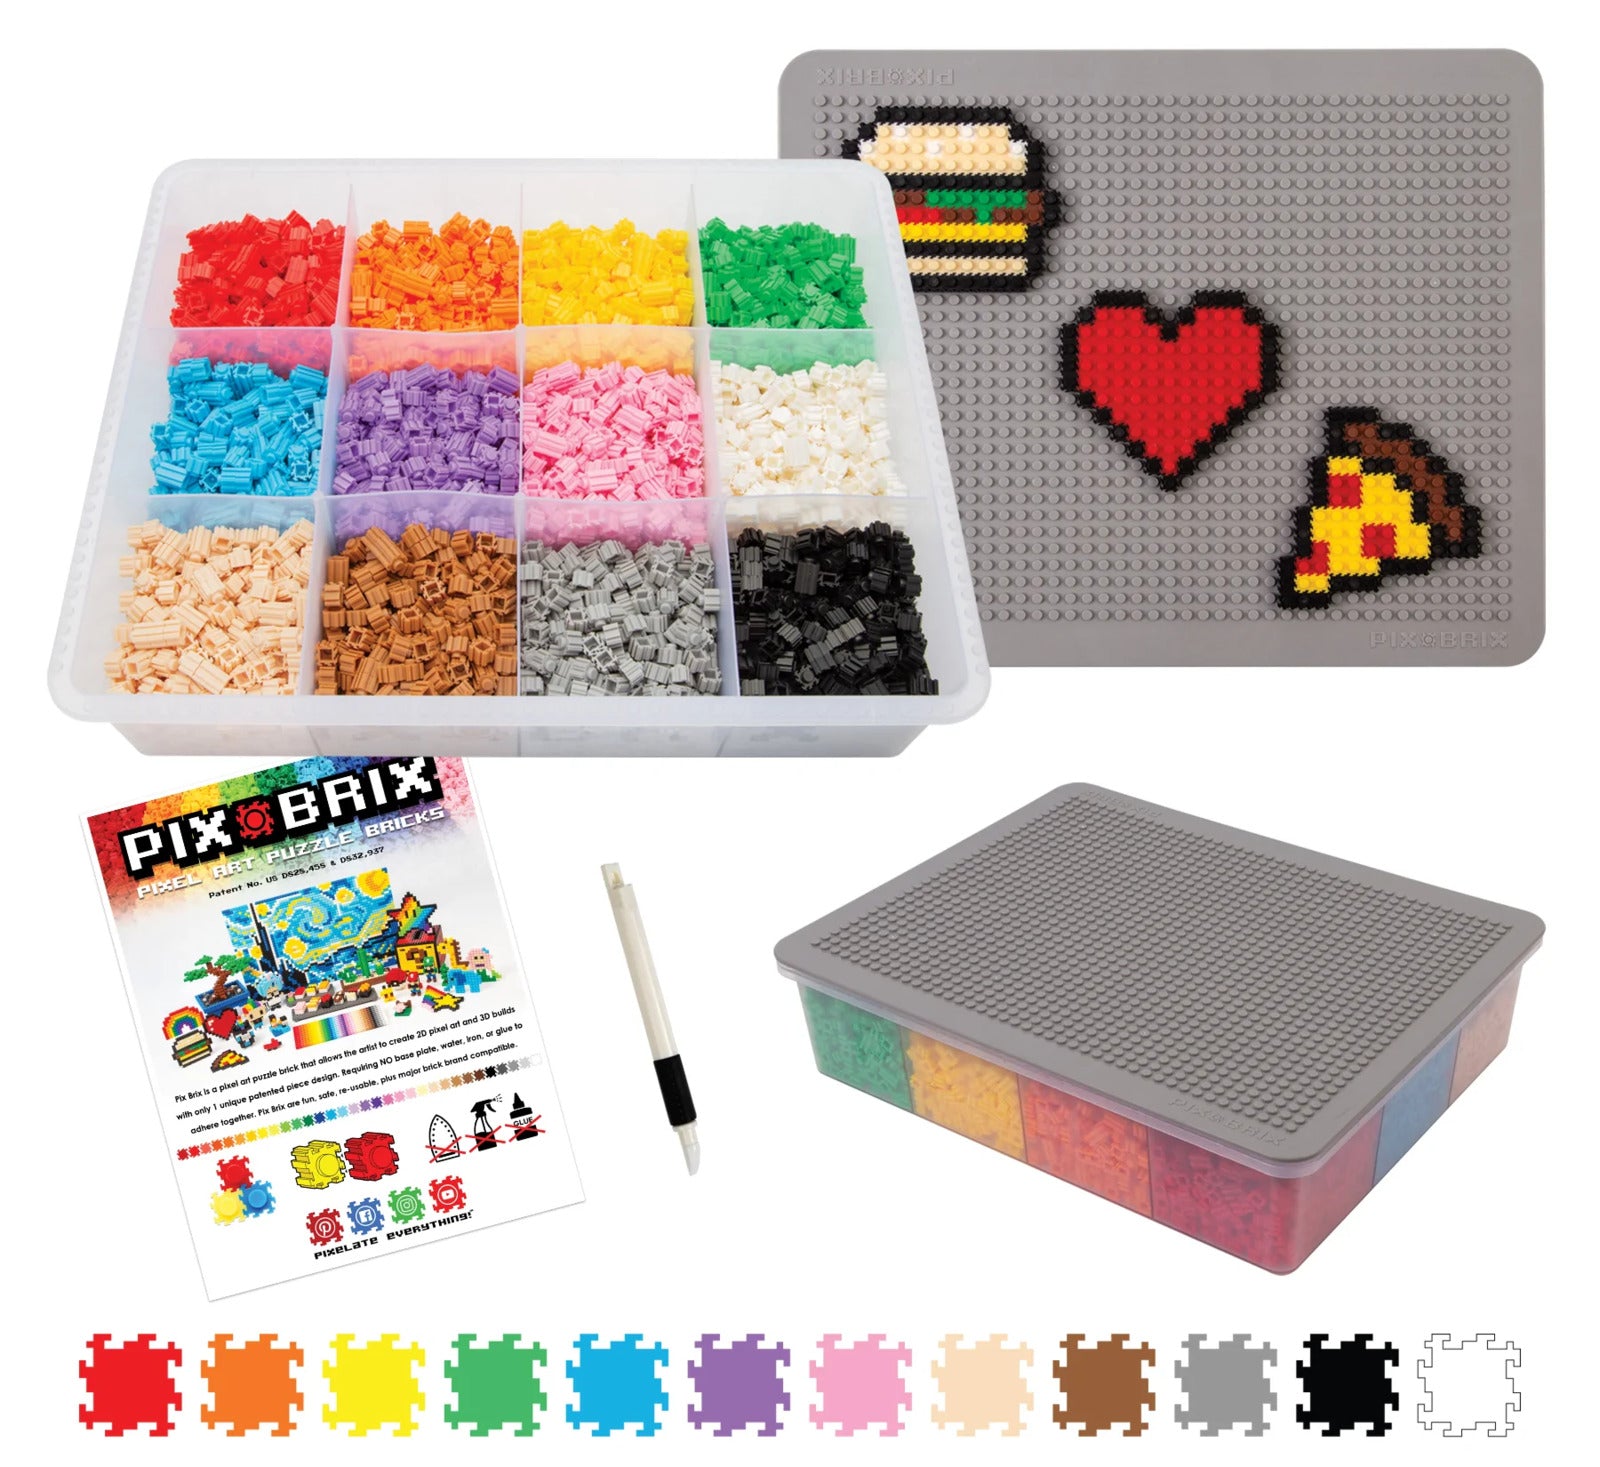 Pix Brix Pixel Art Puzzle Bricks Paint Can, 1,500 Piece Pixel Art Kit with  10 Colors, Medium Palette - Patented Interlocking Building Bricks, Create  2D & 3D Builds for Ages 6+ 